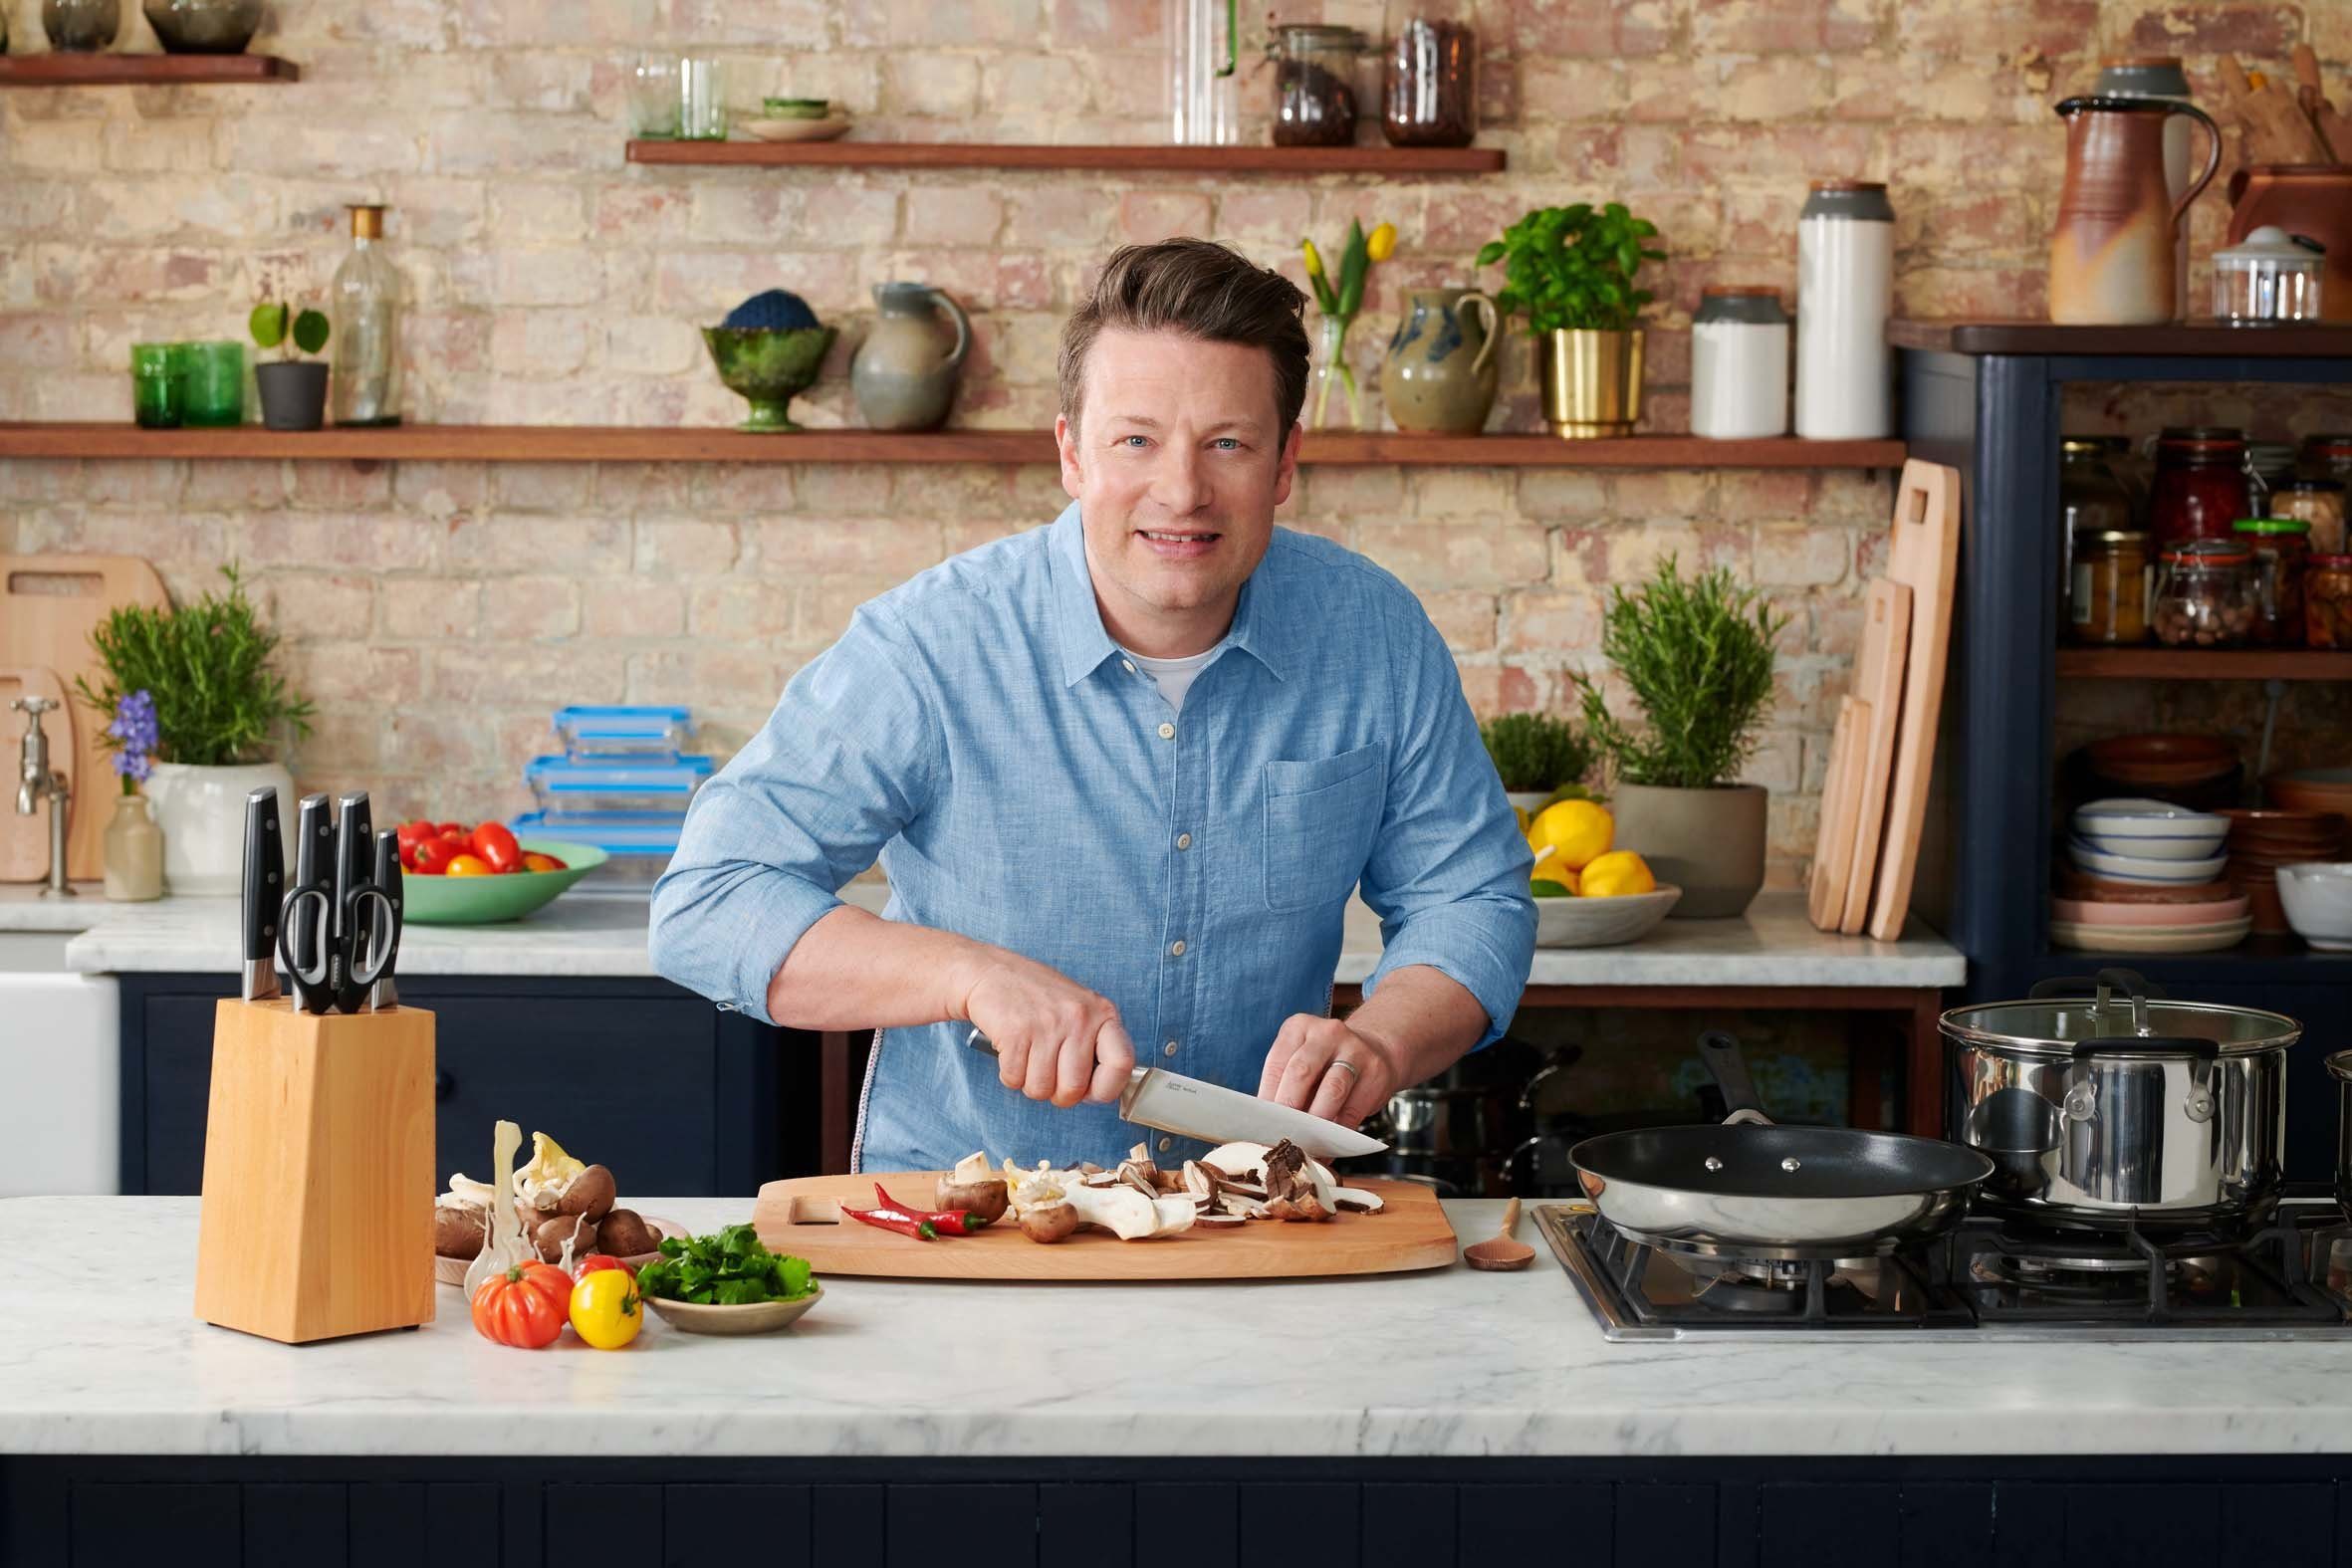 Tefal Fleischmesser Jamie Oliver Leistung, unverwechselbares widerstandsfähig/langlebig hohe K26702, Design